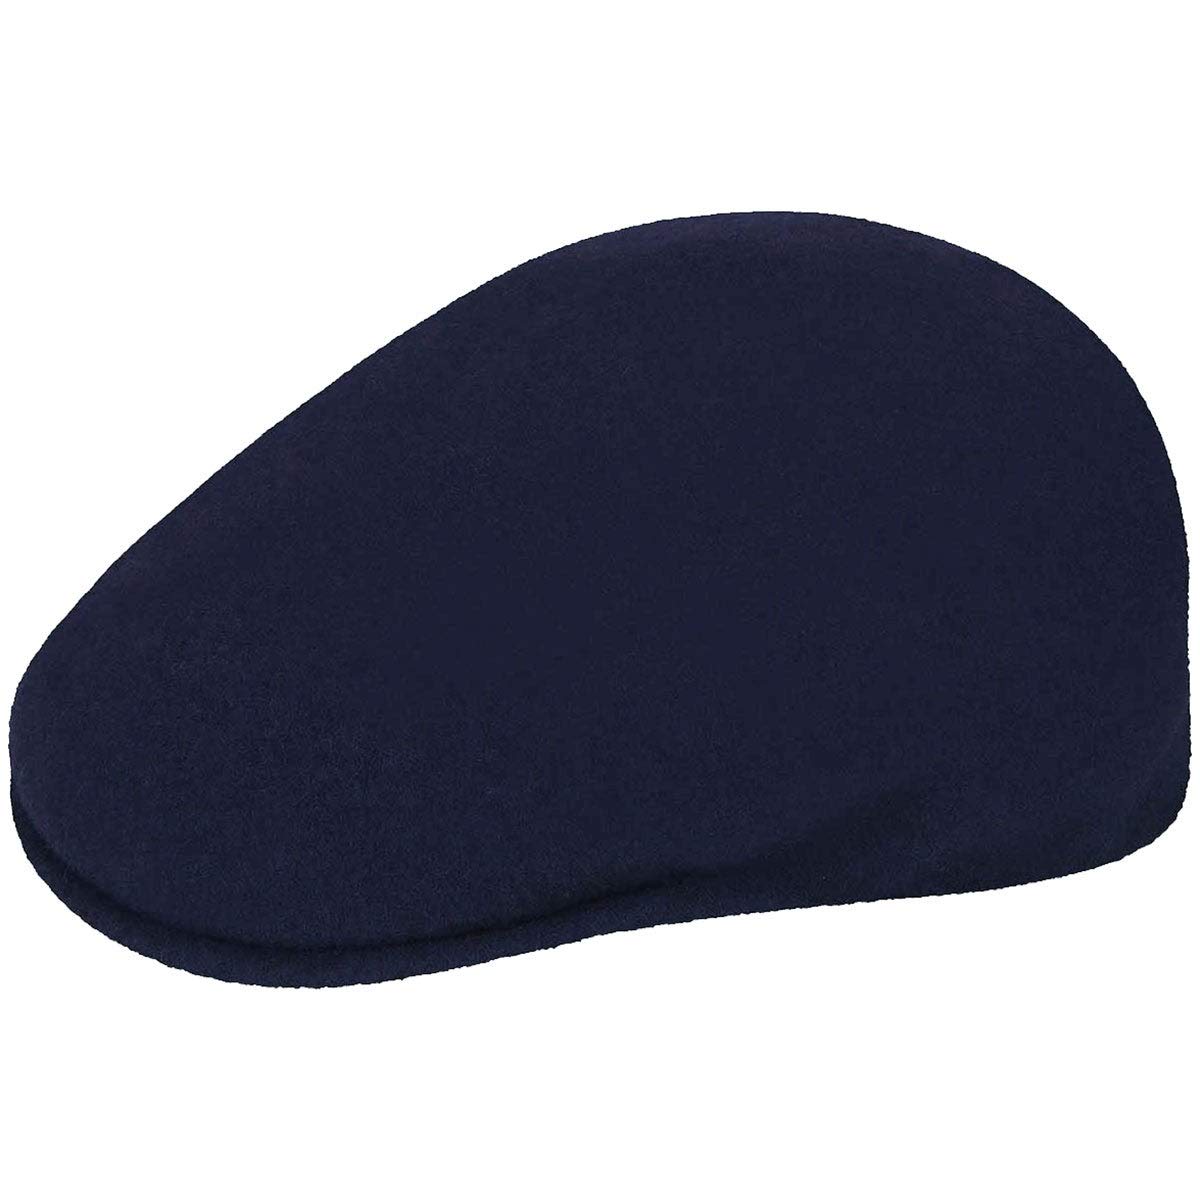 Kangol Herren Schirmmütze Wool 504, Blau (Dark Blue), XL